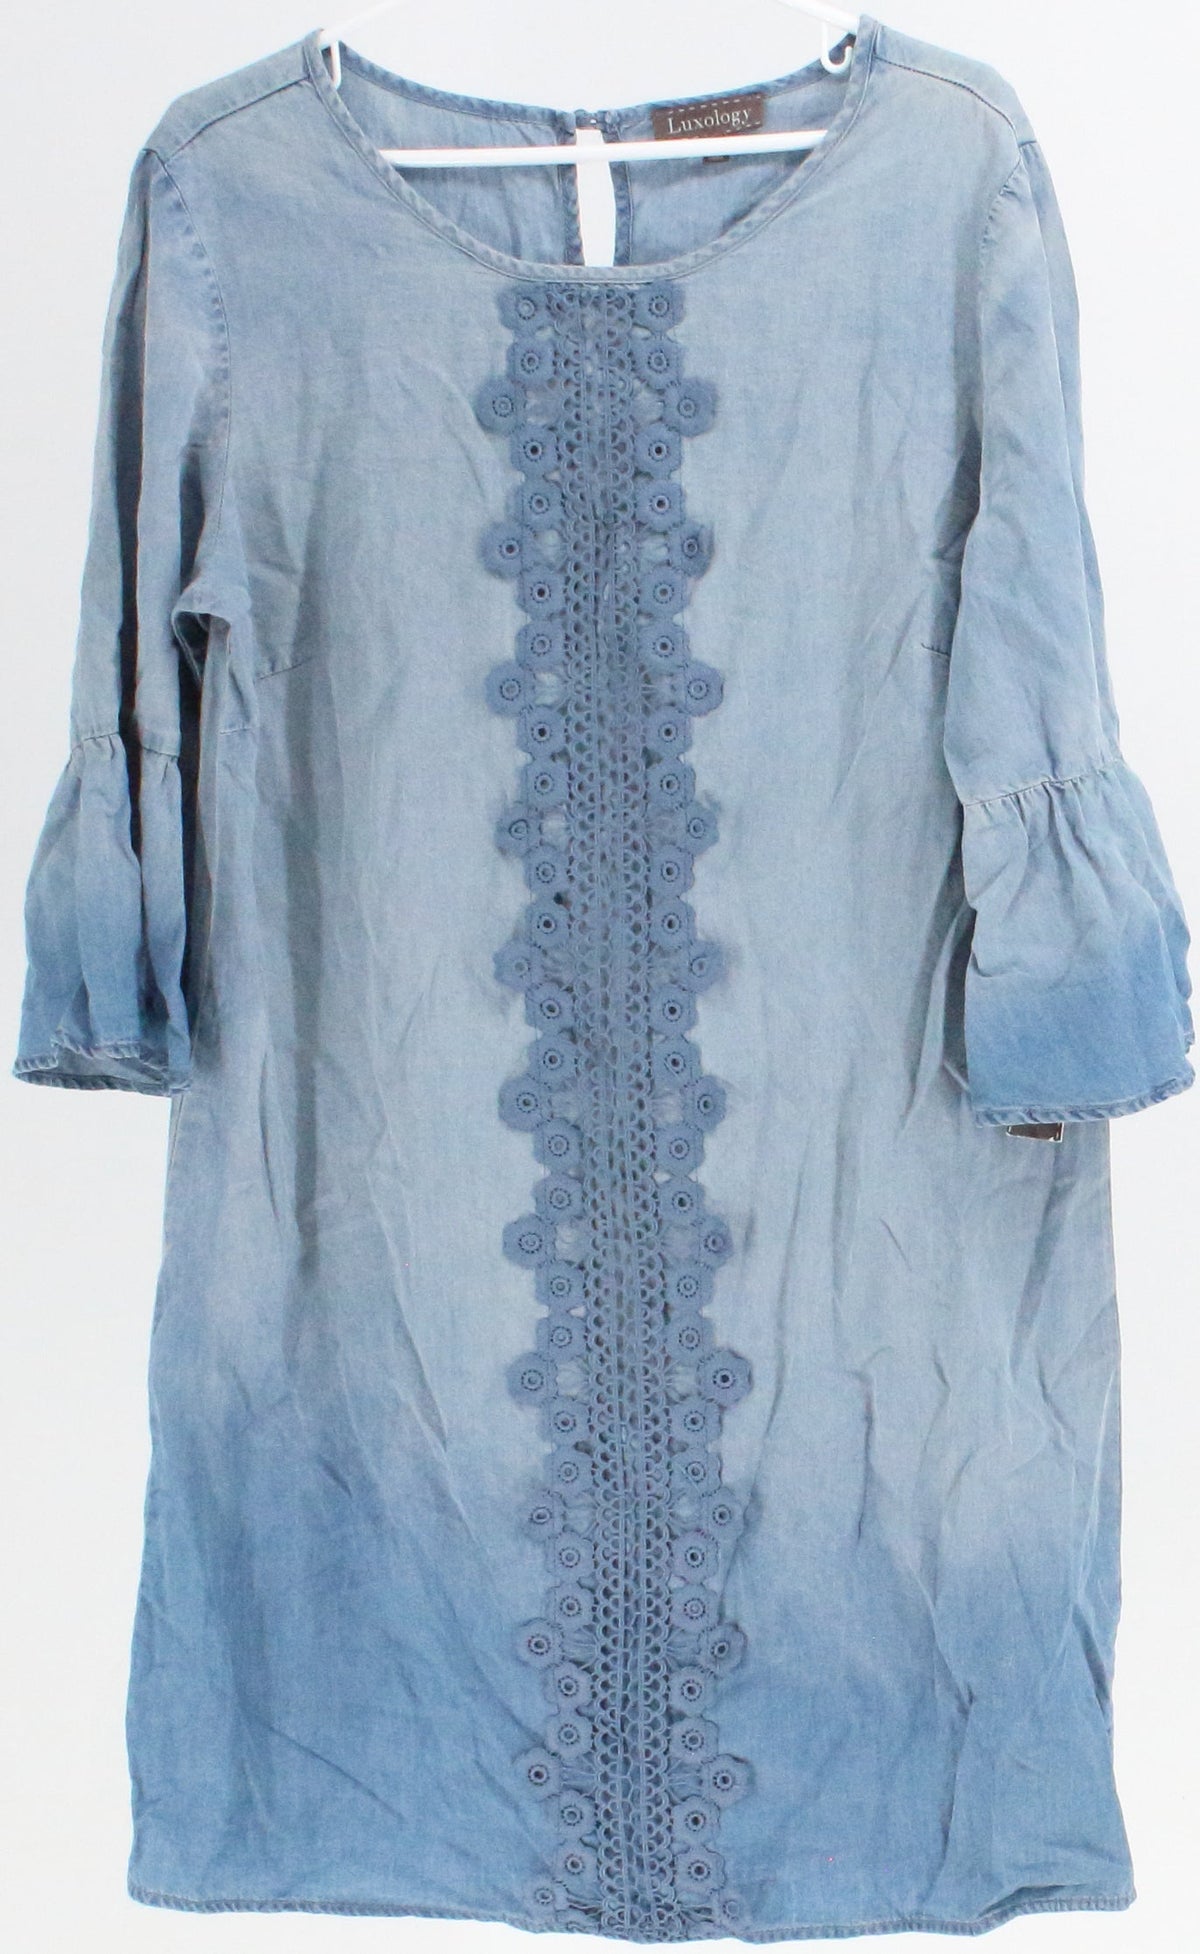 Luxology Blue Denim Long Sleeve Dress